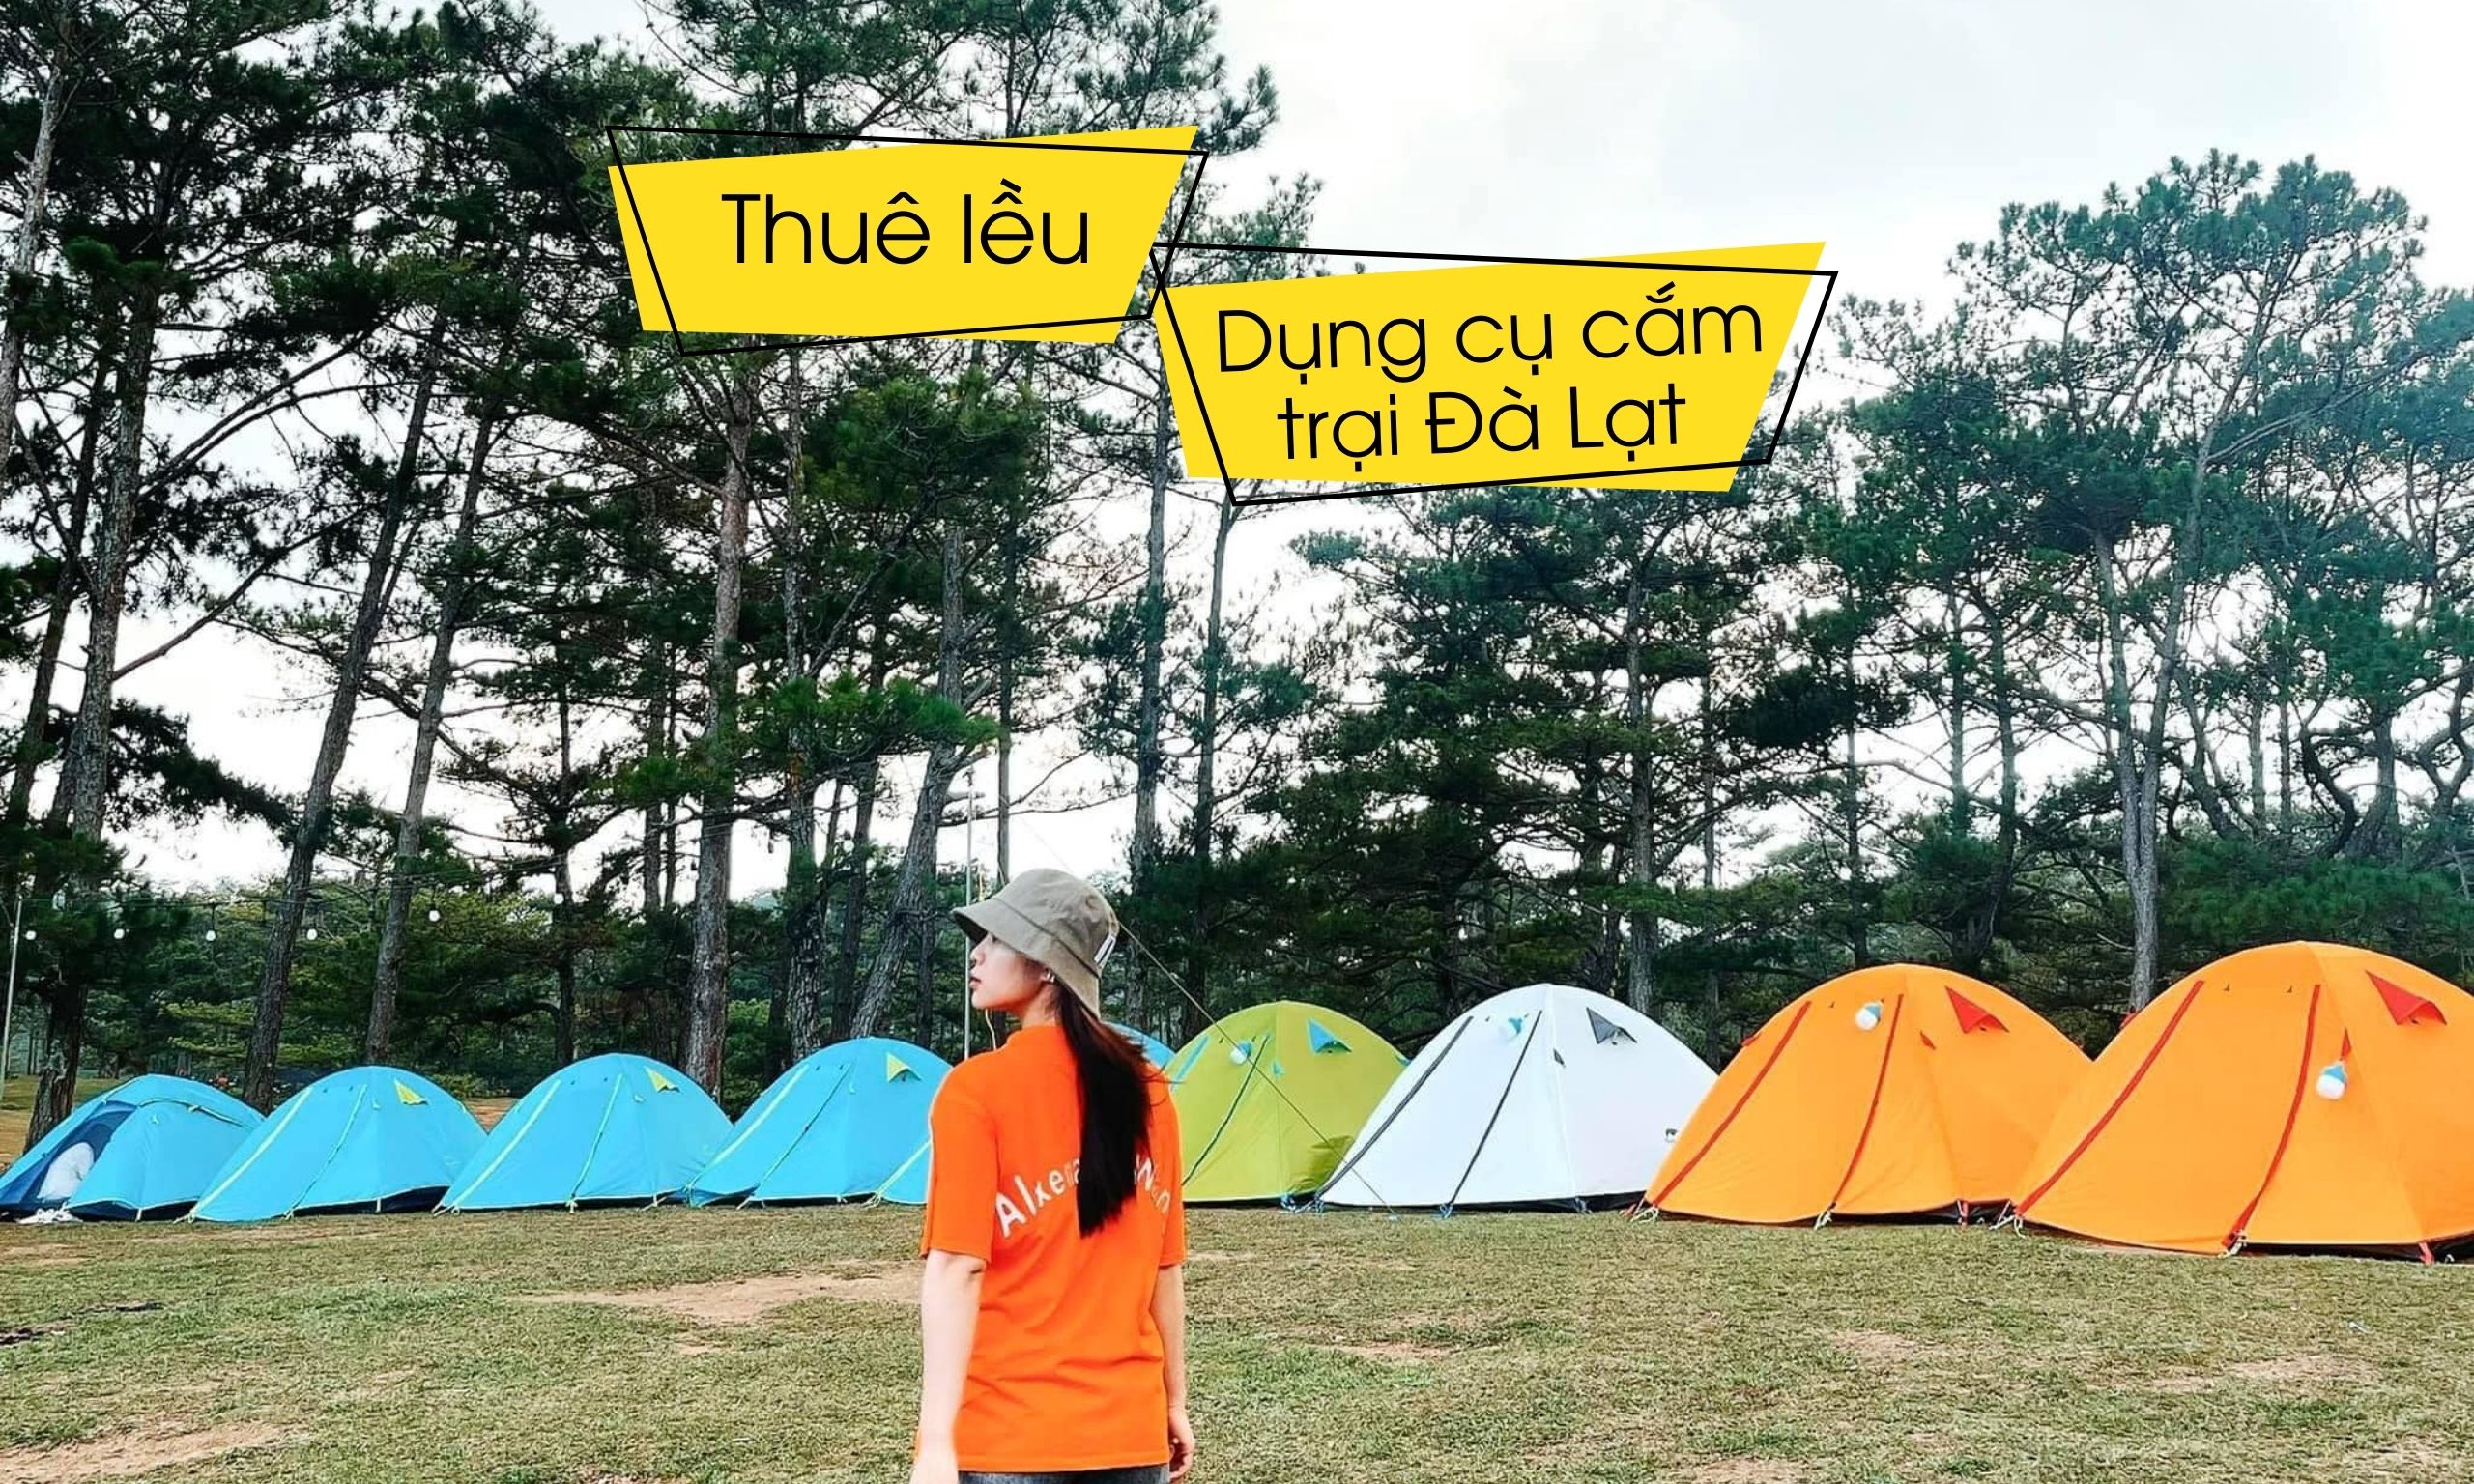 Dịch vụ cho thuê lều cắm trại Đà Lạt 